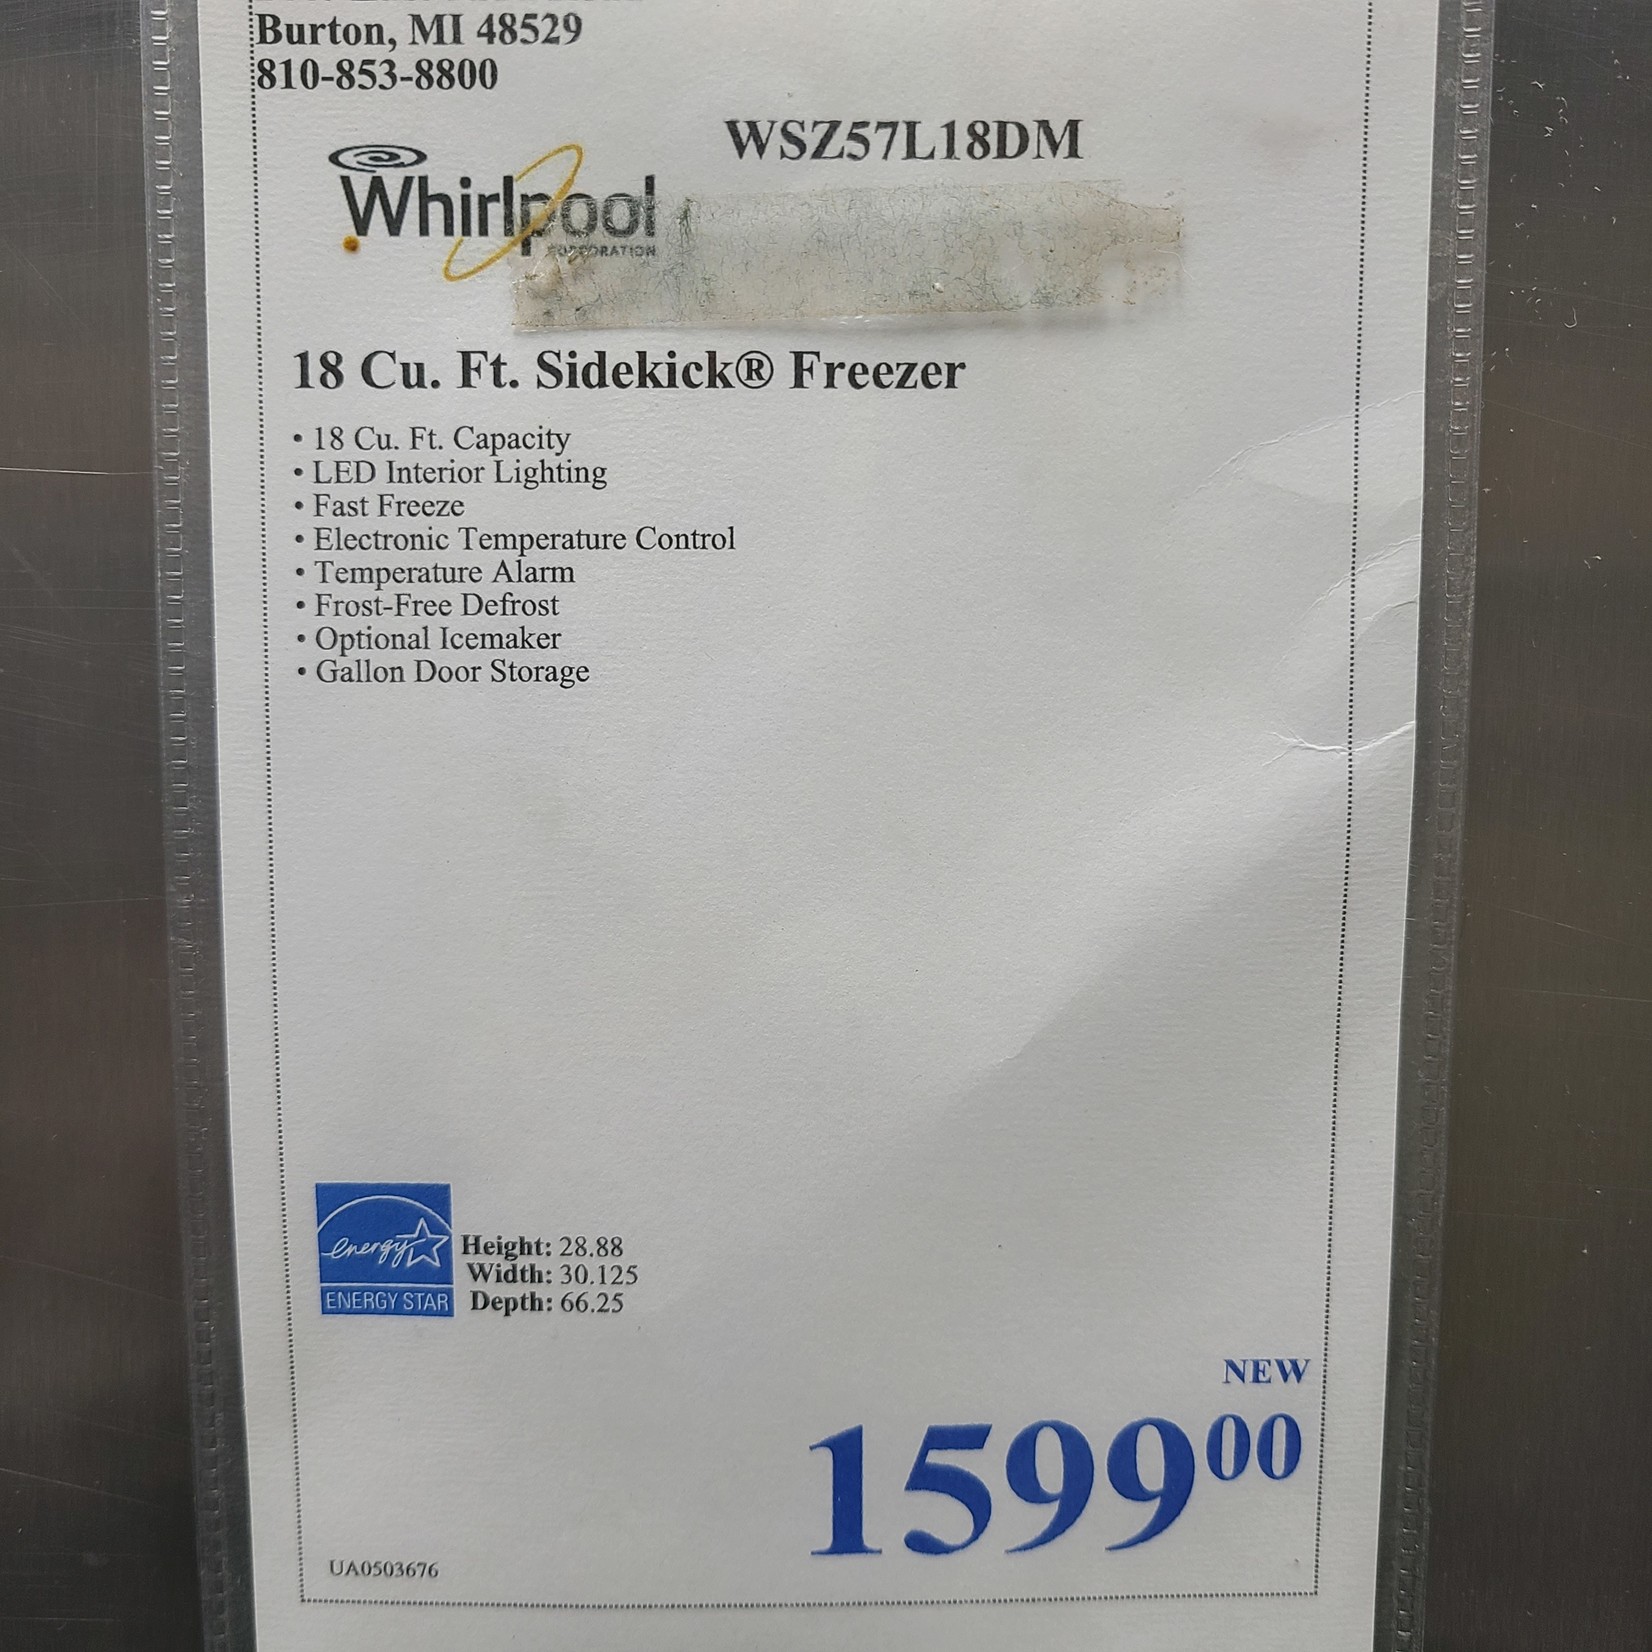 Whirlpool Whirlpool 18 Cu. Ft. Sidekicks All-Freezer WSZ57L18DM - UA0503676